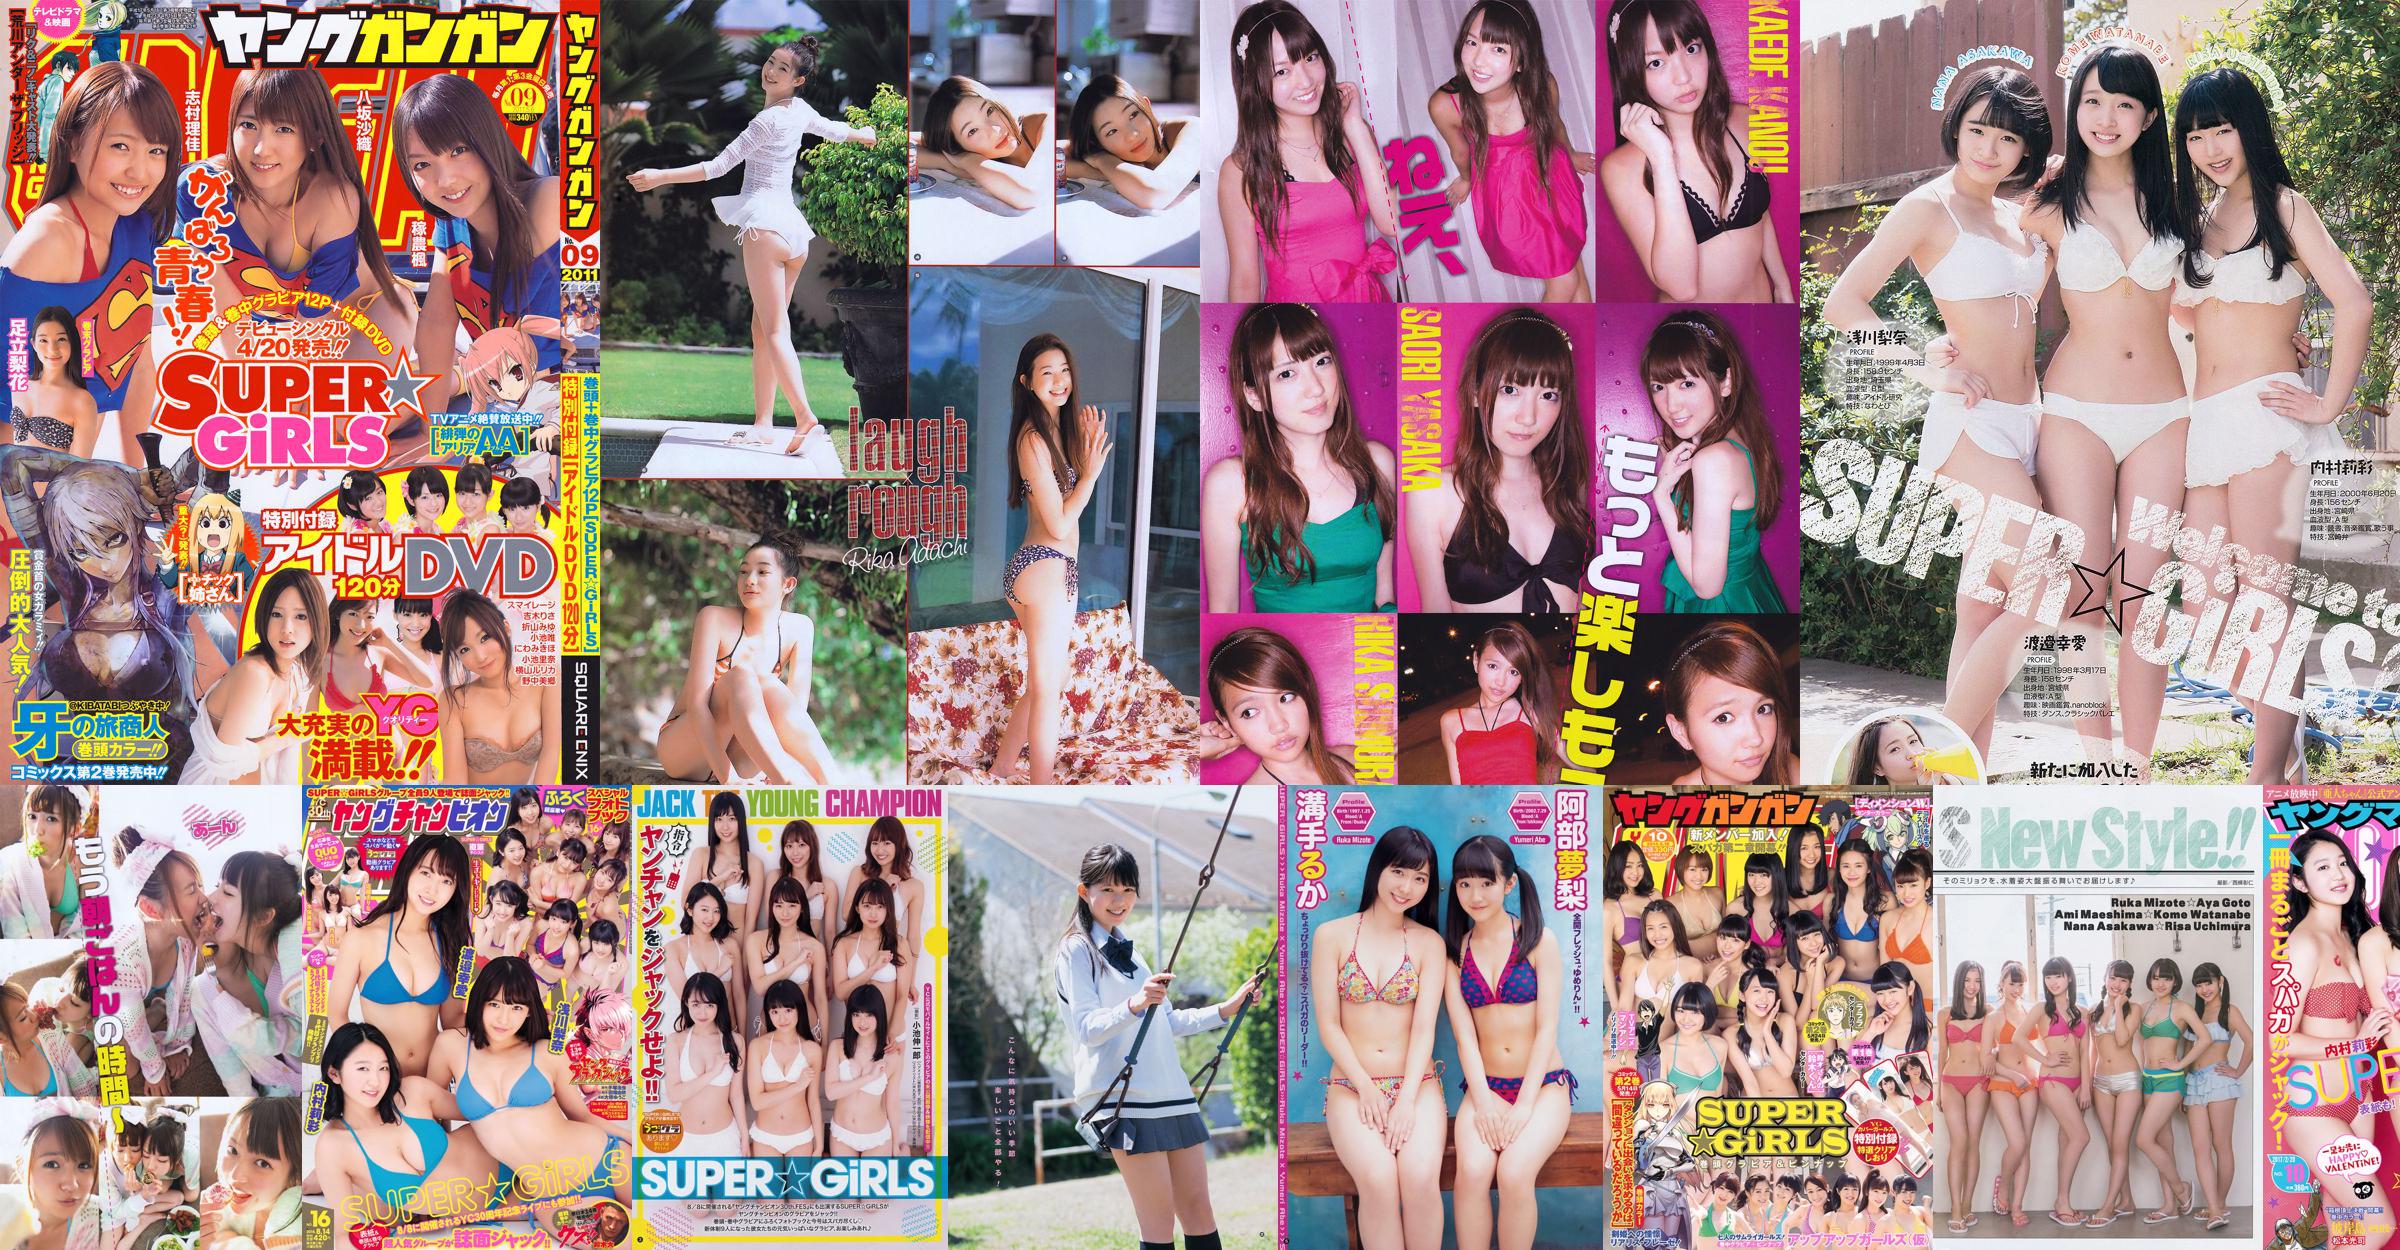 [Young Gangan] SUPER☆GiRLS 桃瀬美咲 2011年No.14 写真杂志 No.d6d00b 第11頁